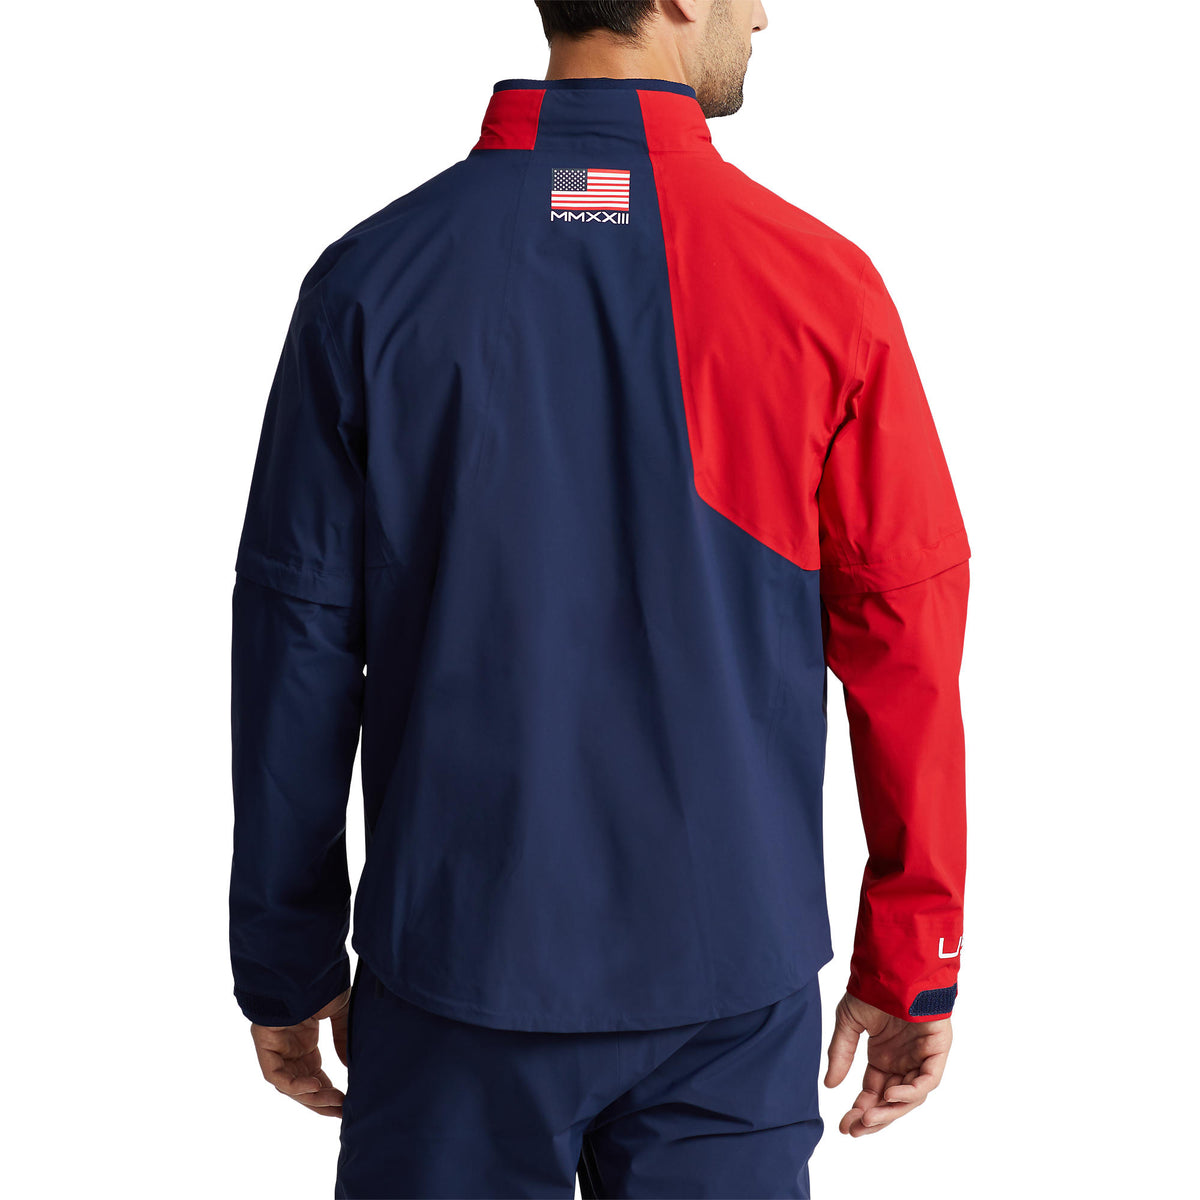 Ralph Lauren 2023 Ryder Cup Official Team Uniform Full Zip Rain Jacket